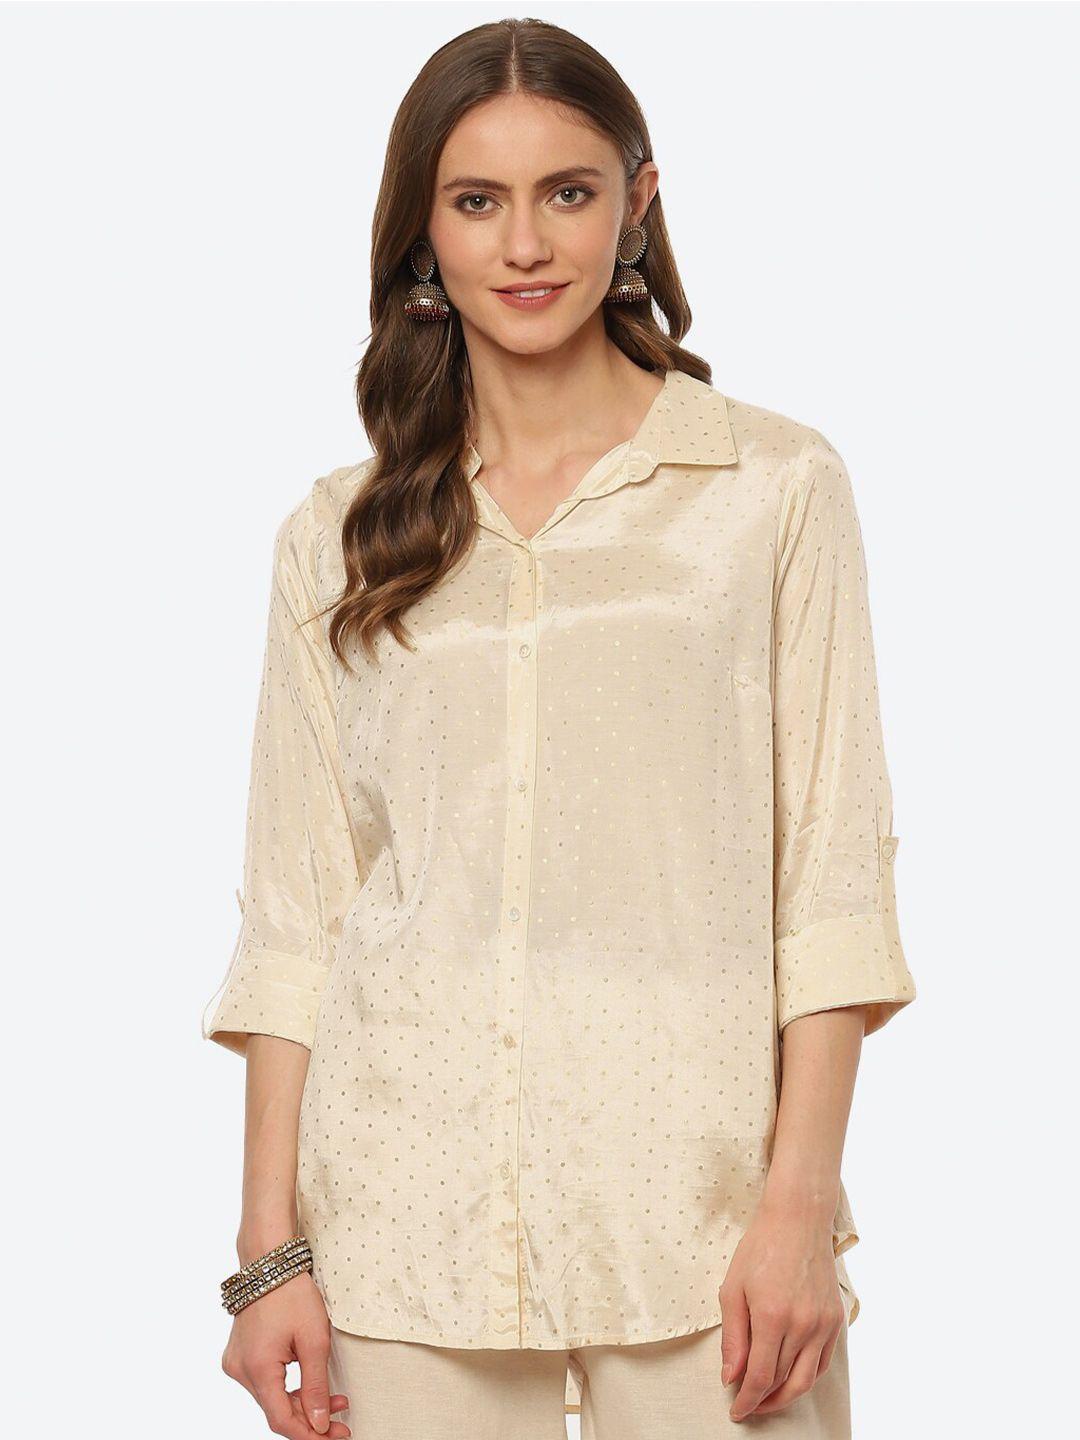 biba-women-beige-classic-printed-casual-shirt